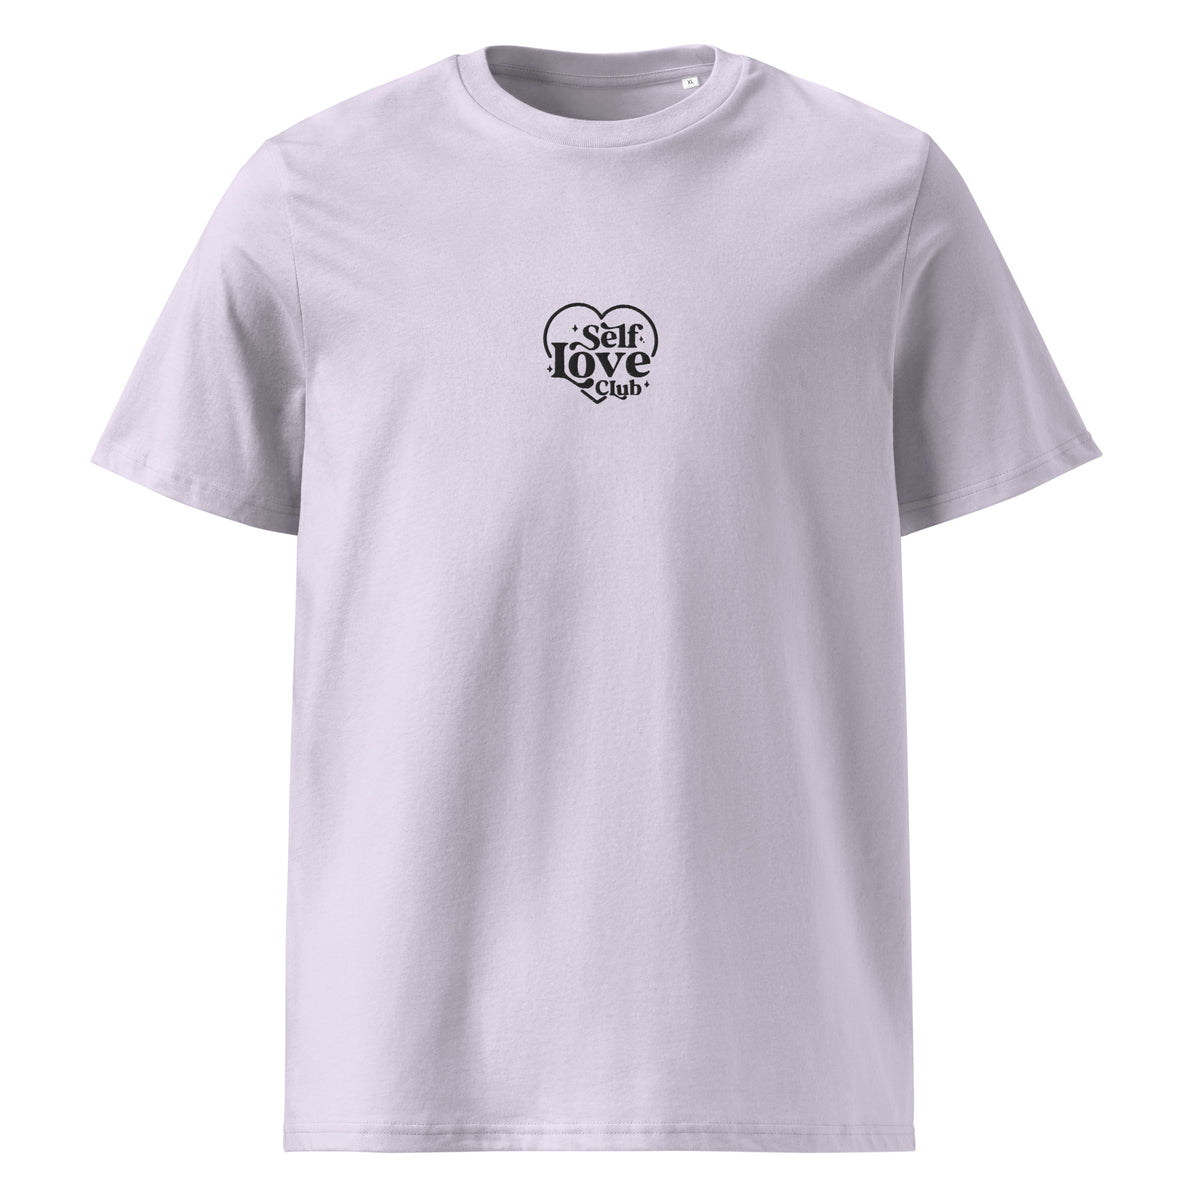 T-shirt | Self Love Club